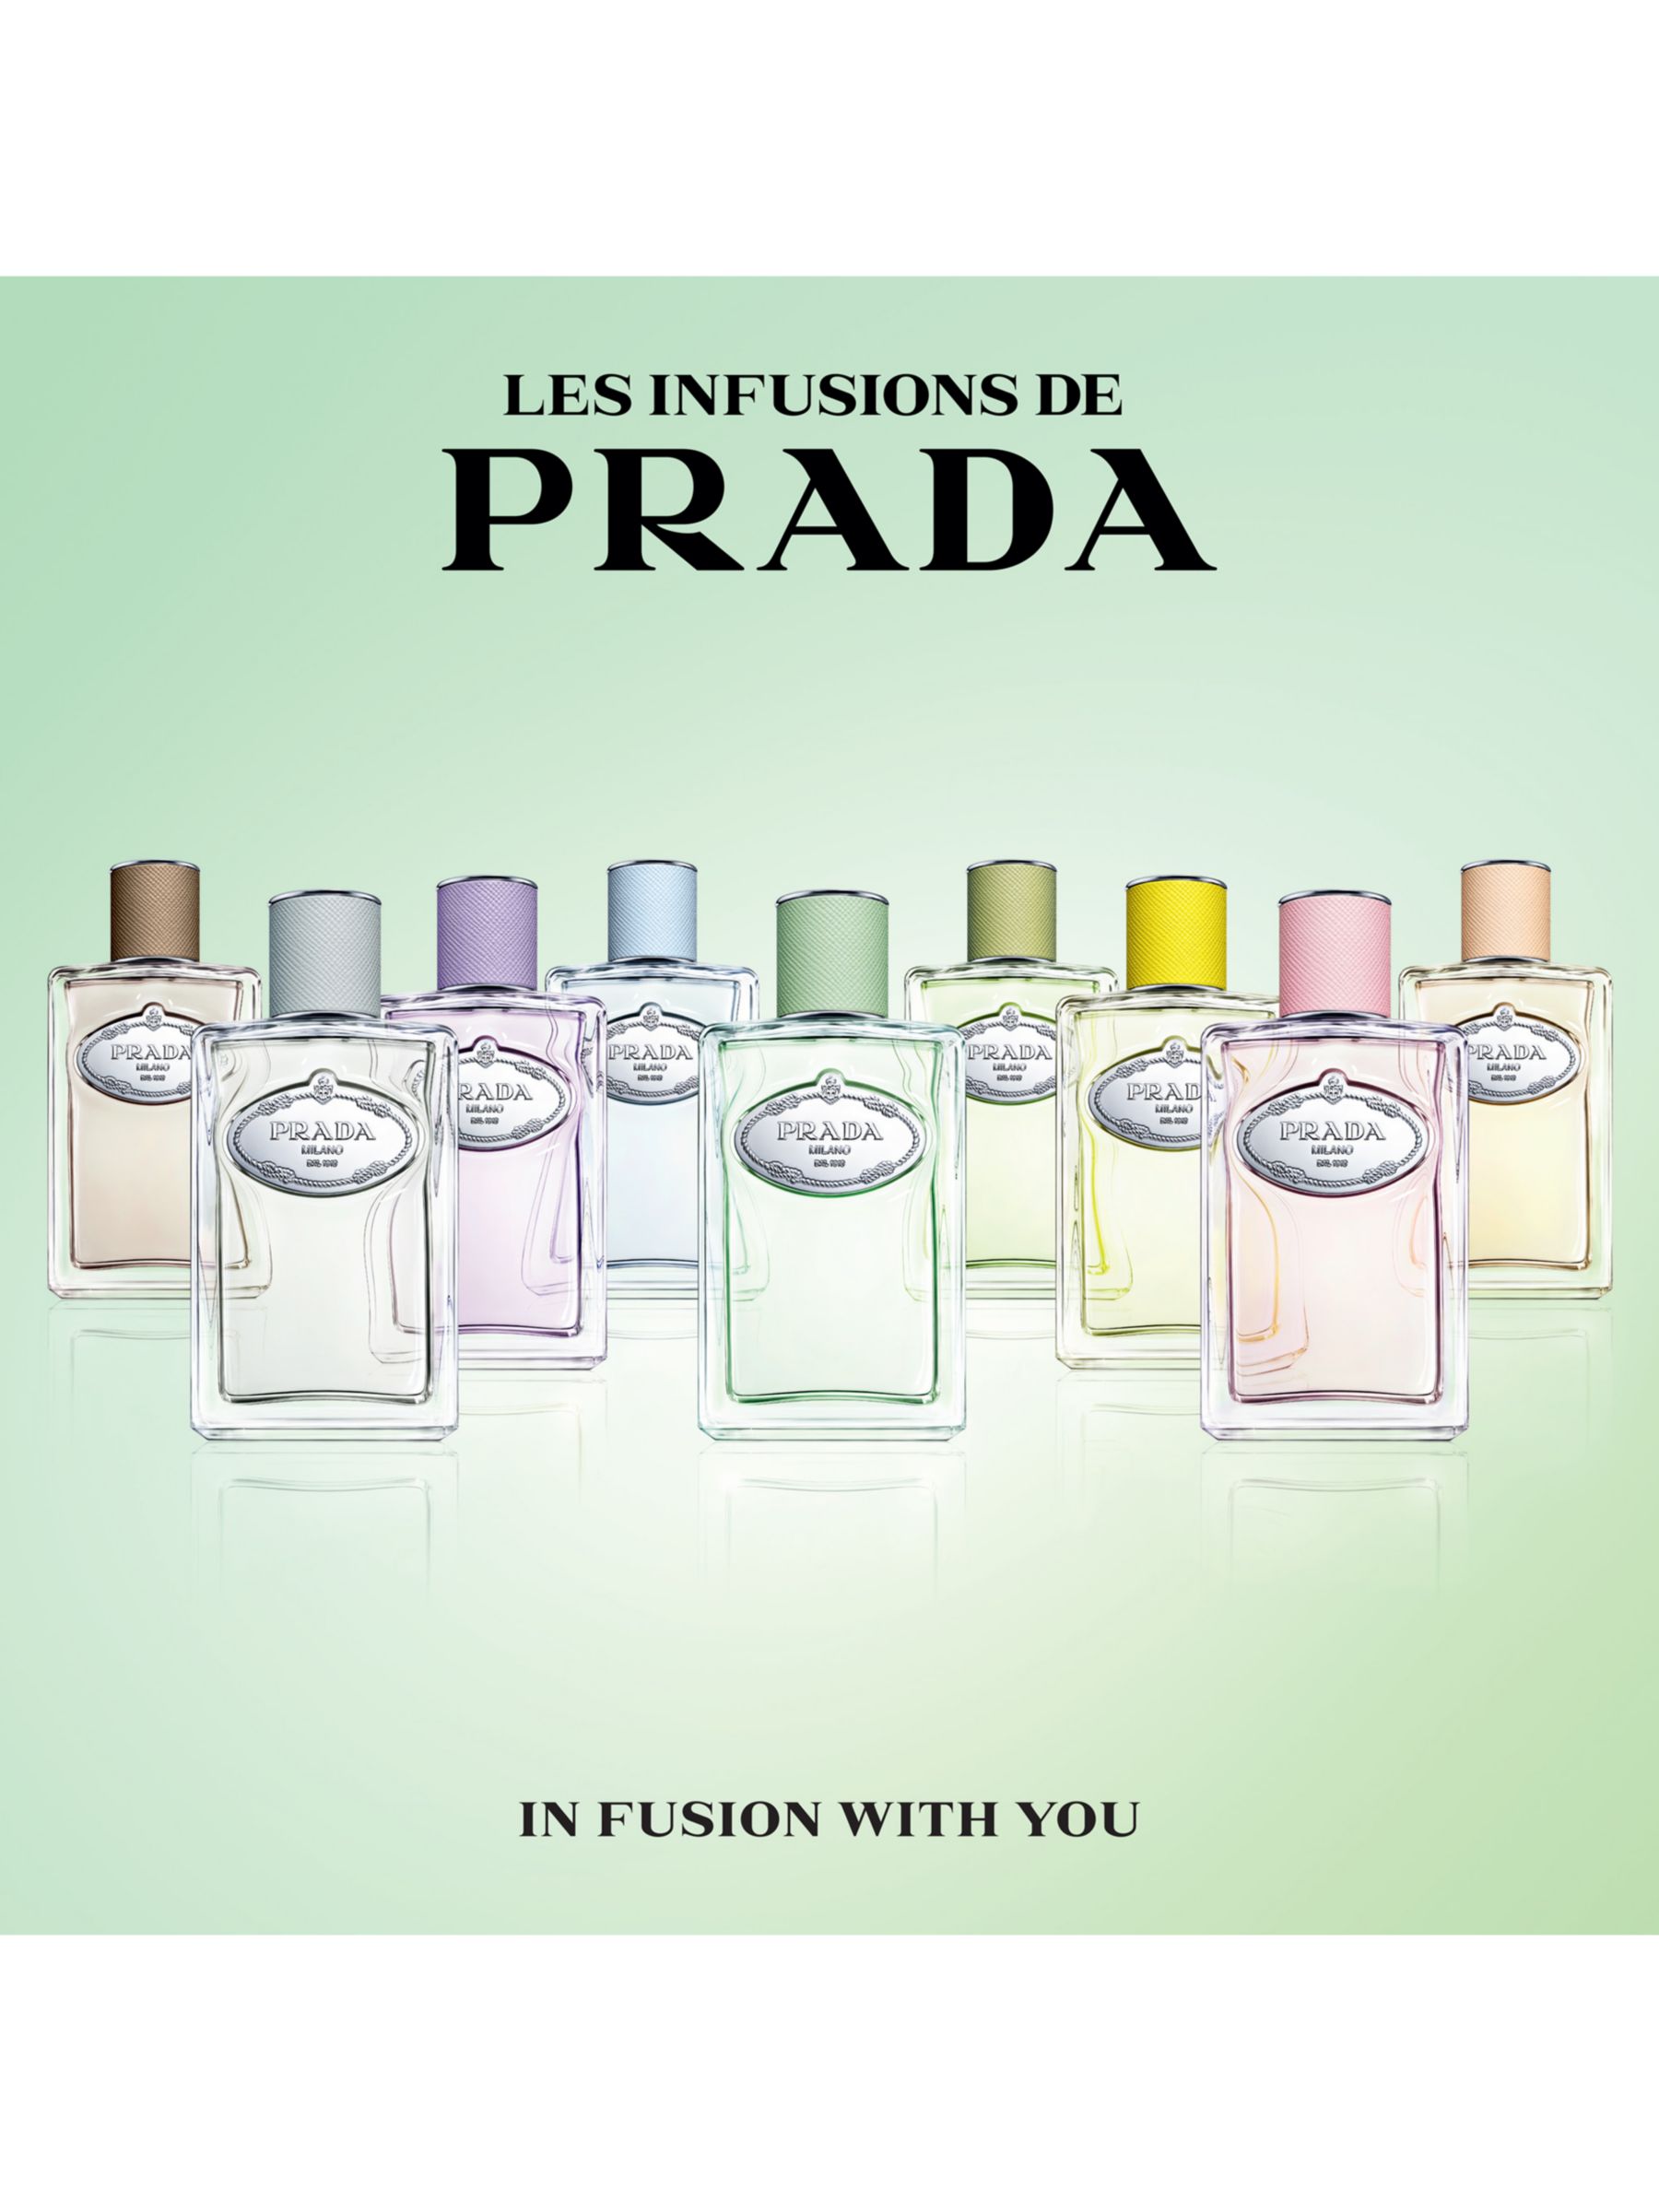 Prada Les Infusions de Prada Iris Cèdre Eau de Parfum, 100ml